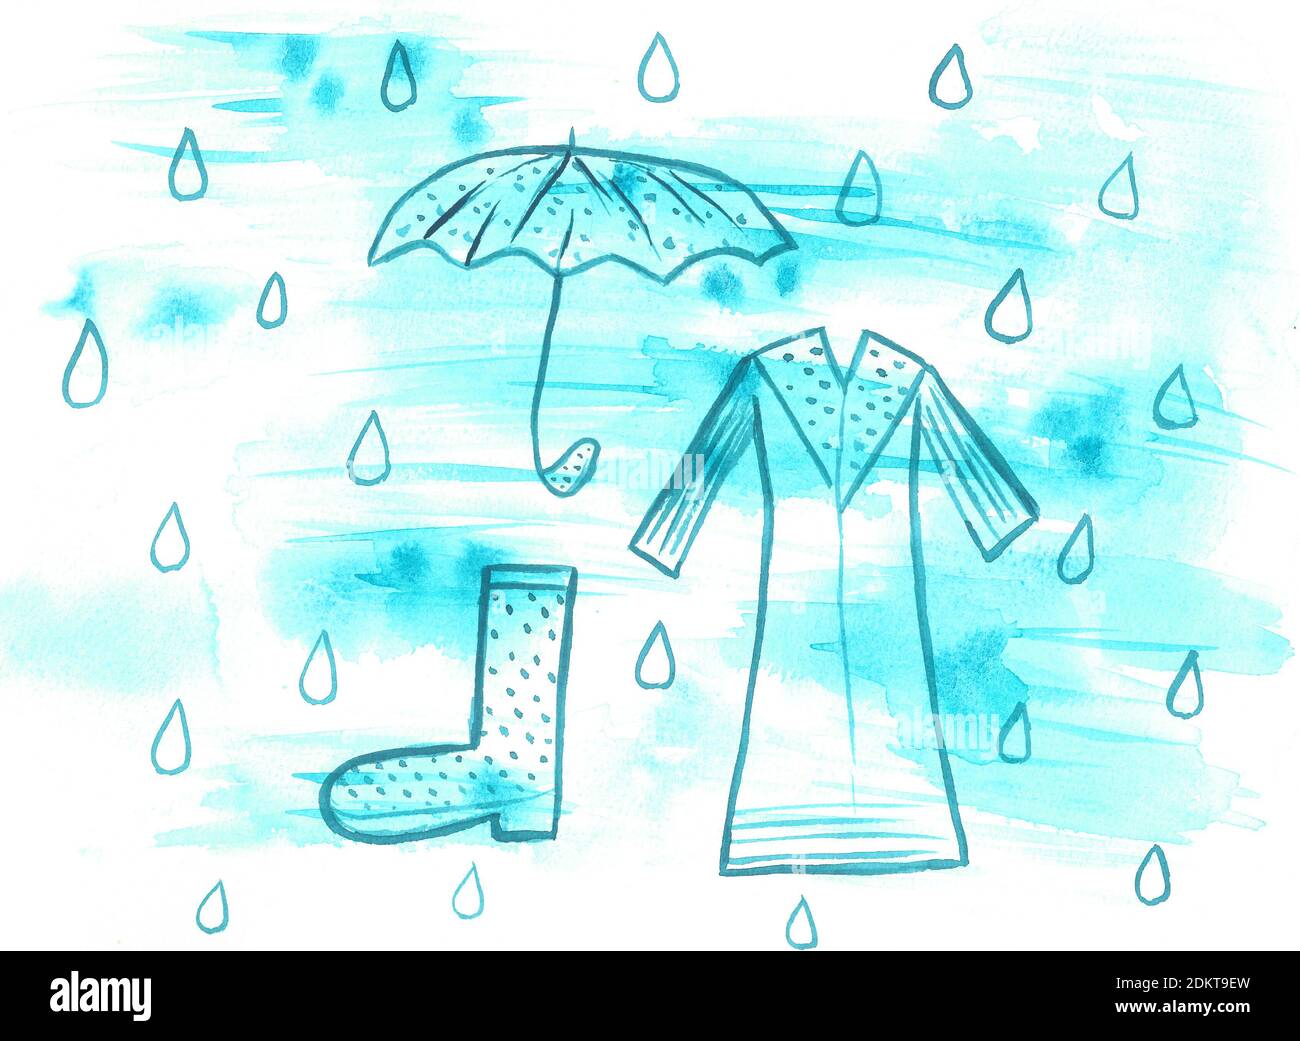 Bewölkt und Regen, Regenschirm, Gummistiefel, Mantel, Mantel, Regenmantel, blaue Regenwolken, Aquarell Hintergrund Stockfoto